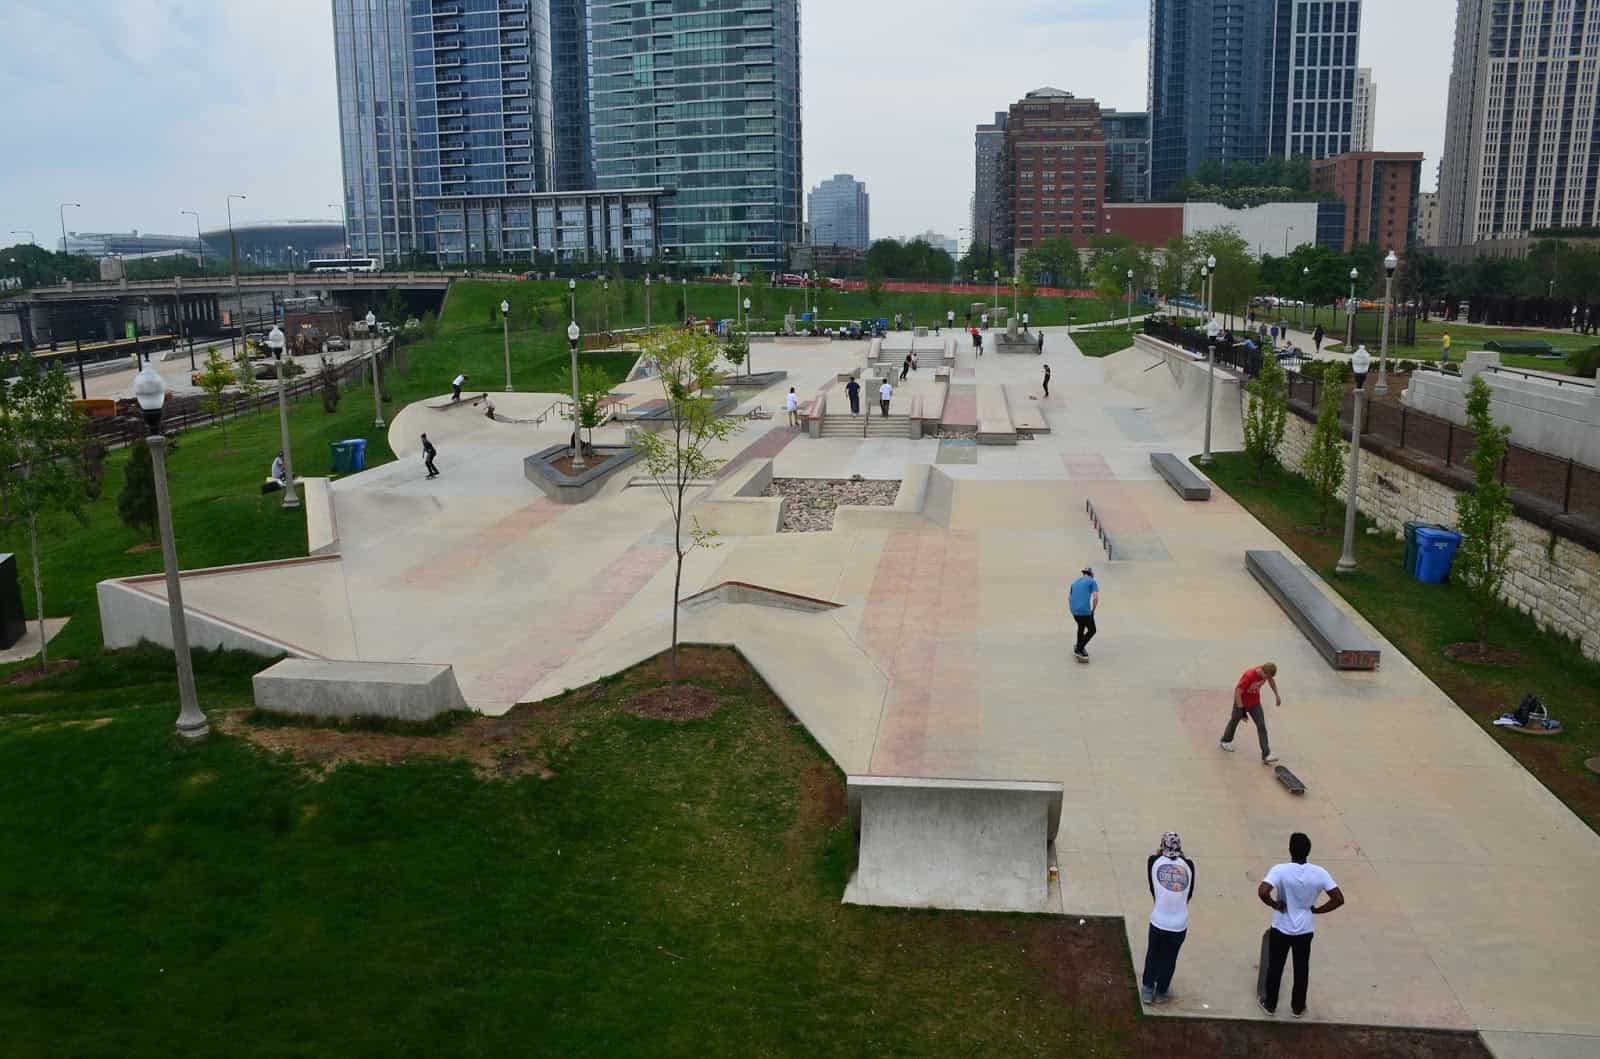 Grant Park Skate Plaza